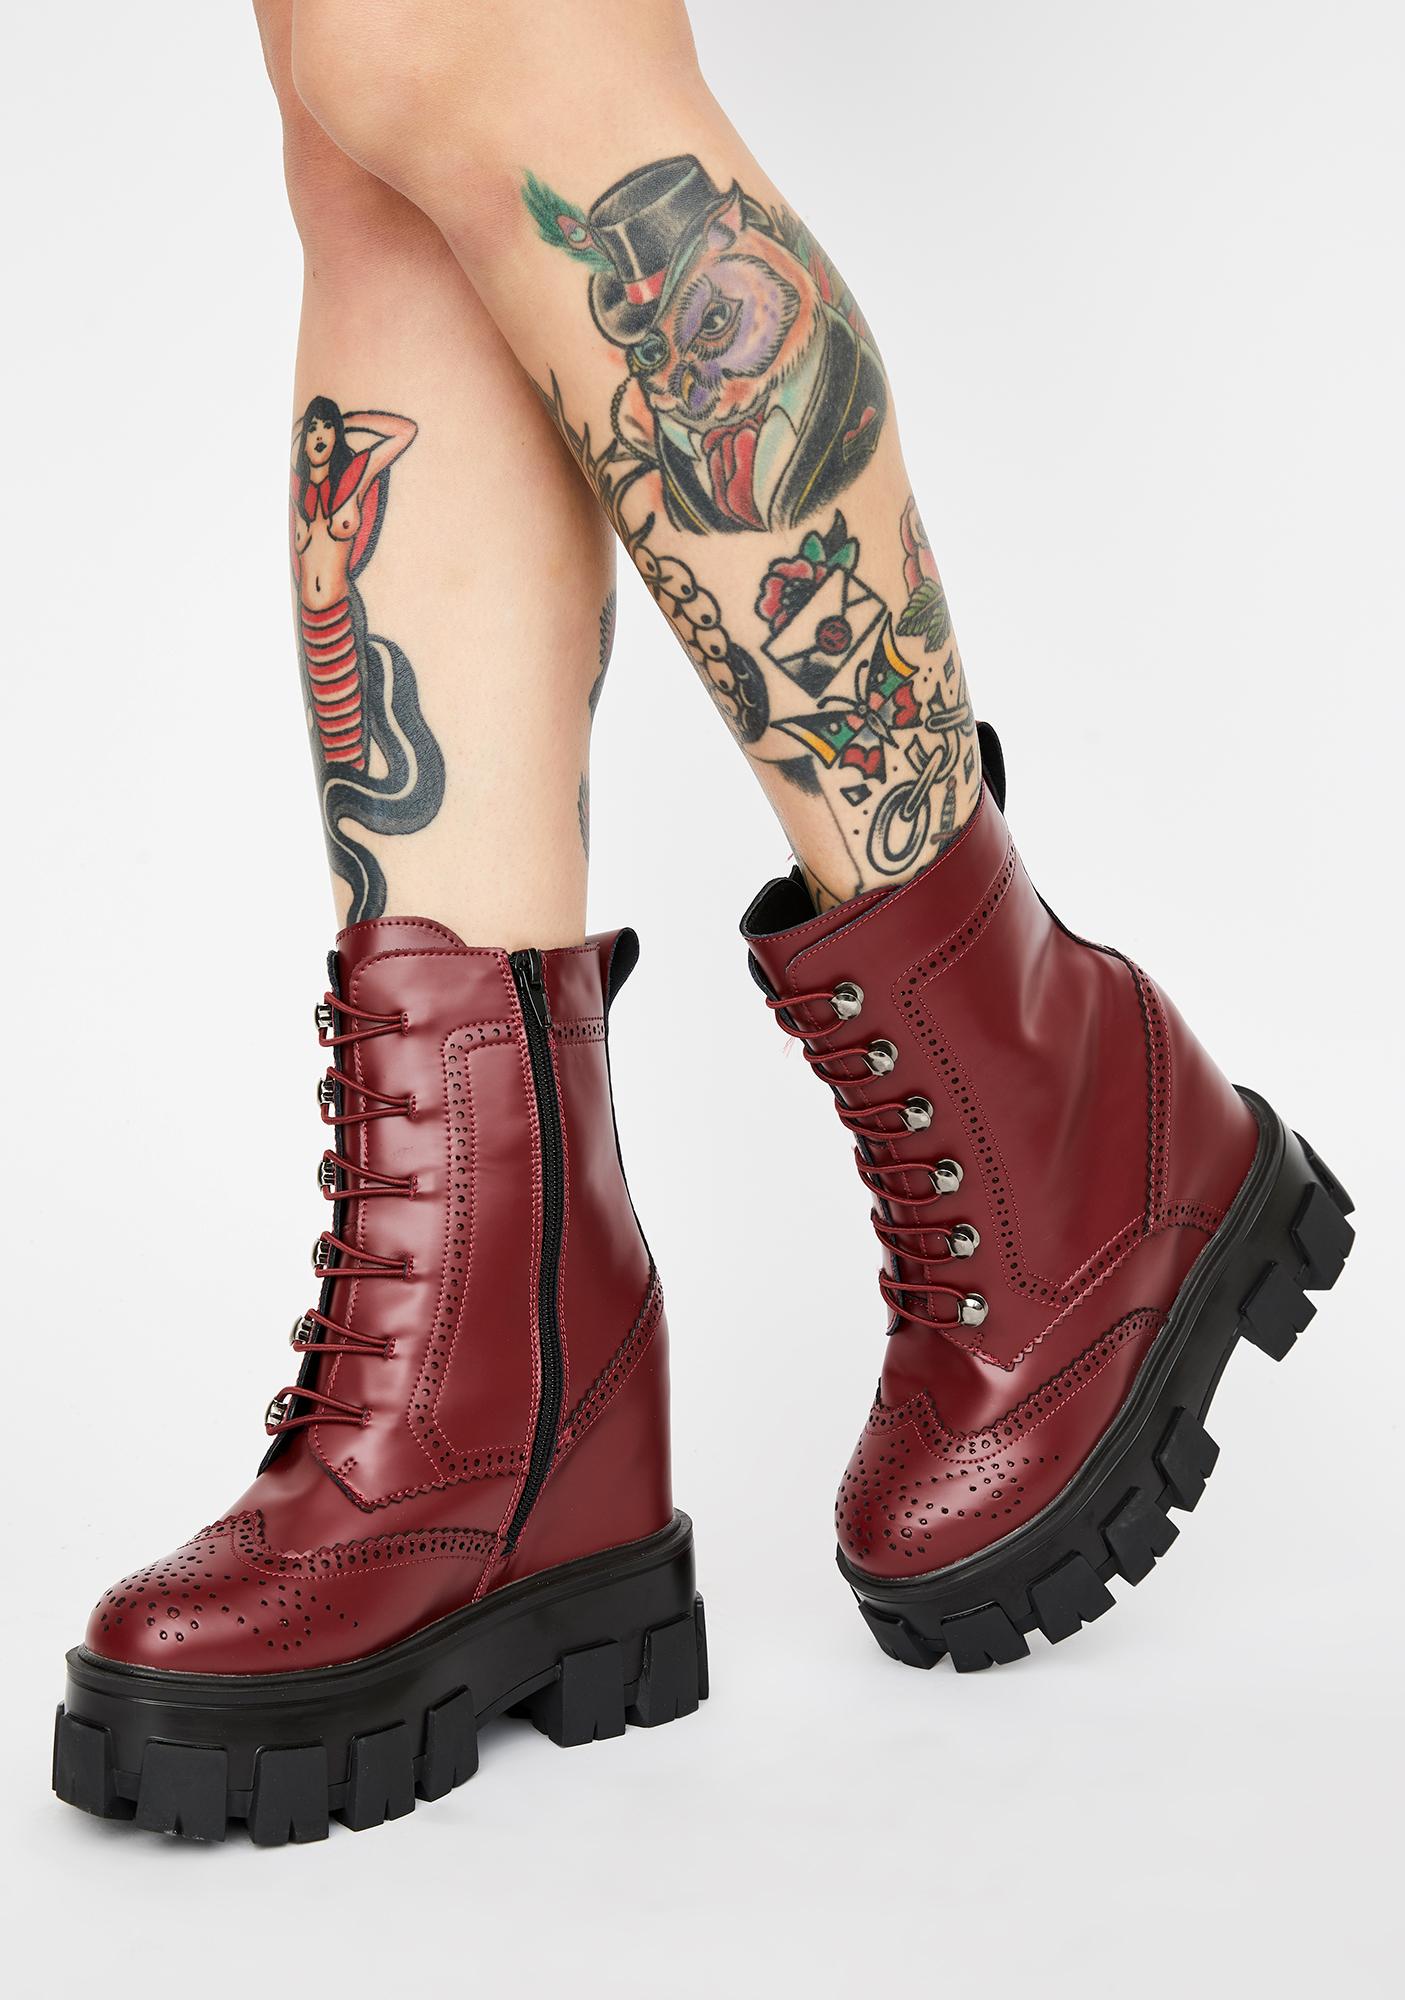 boots for girls on flipkart